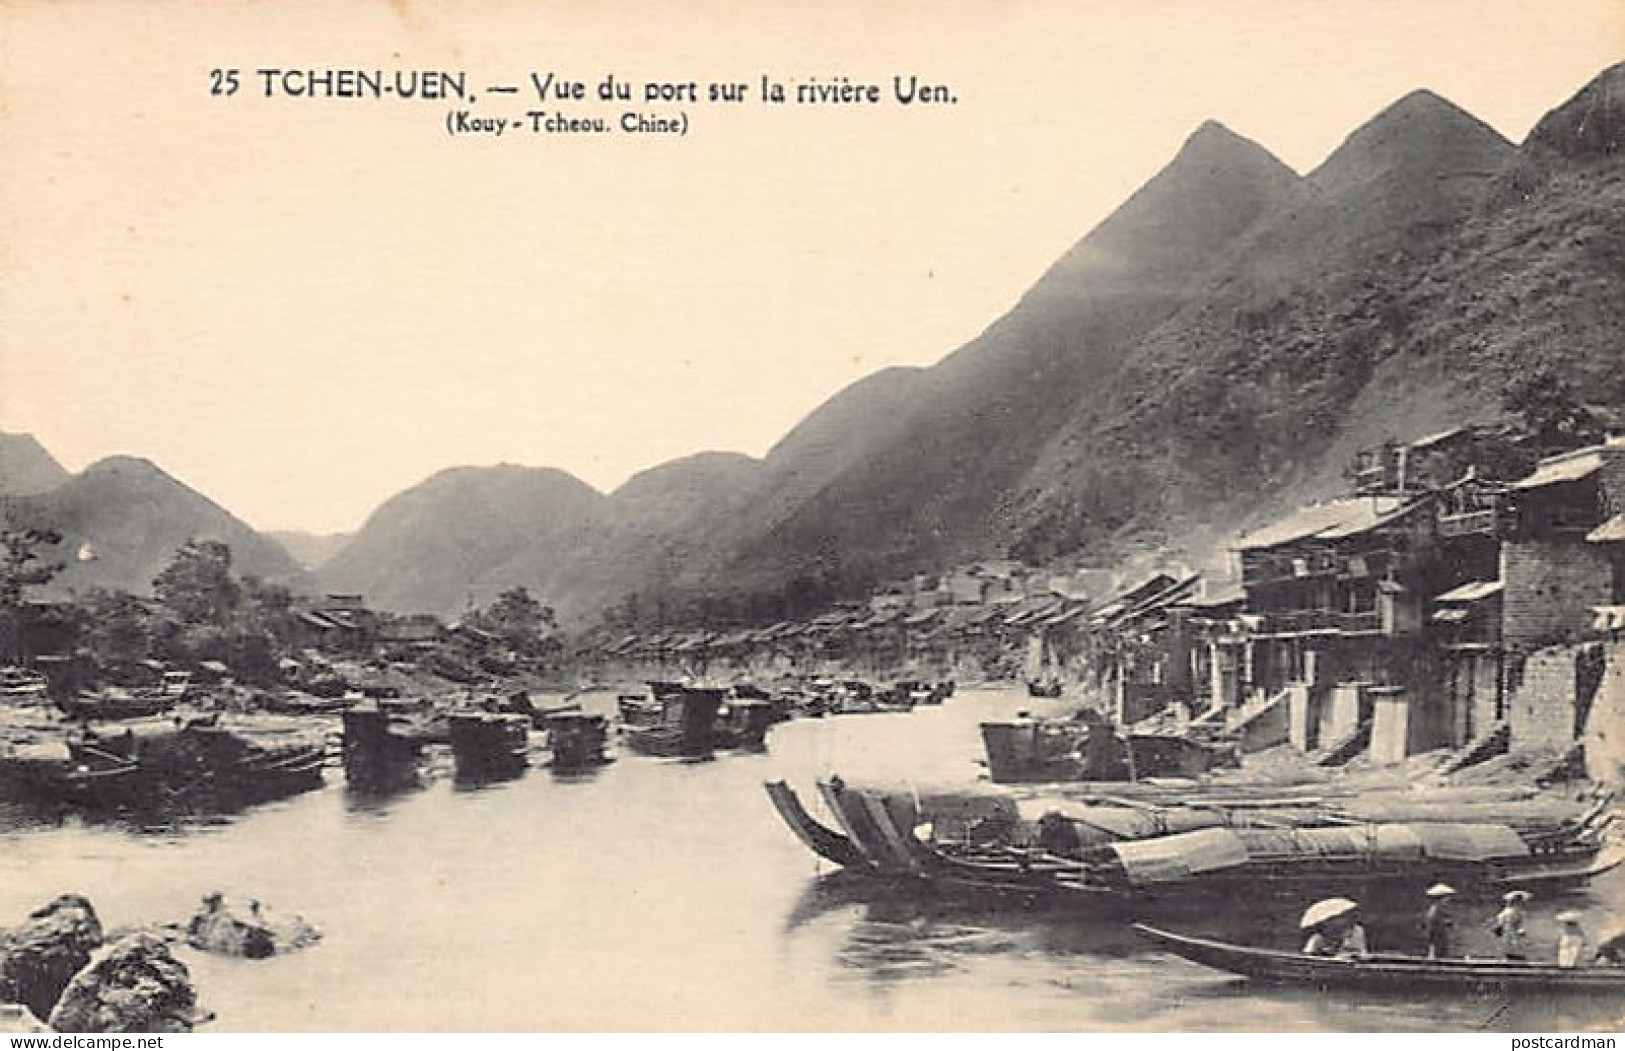 China - TCHEN UEN Guizhou Province - View Of The Harbor On The Uen River - Publ. Missions étrangères De Paris, France 25 - China